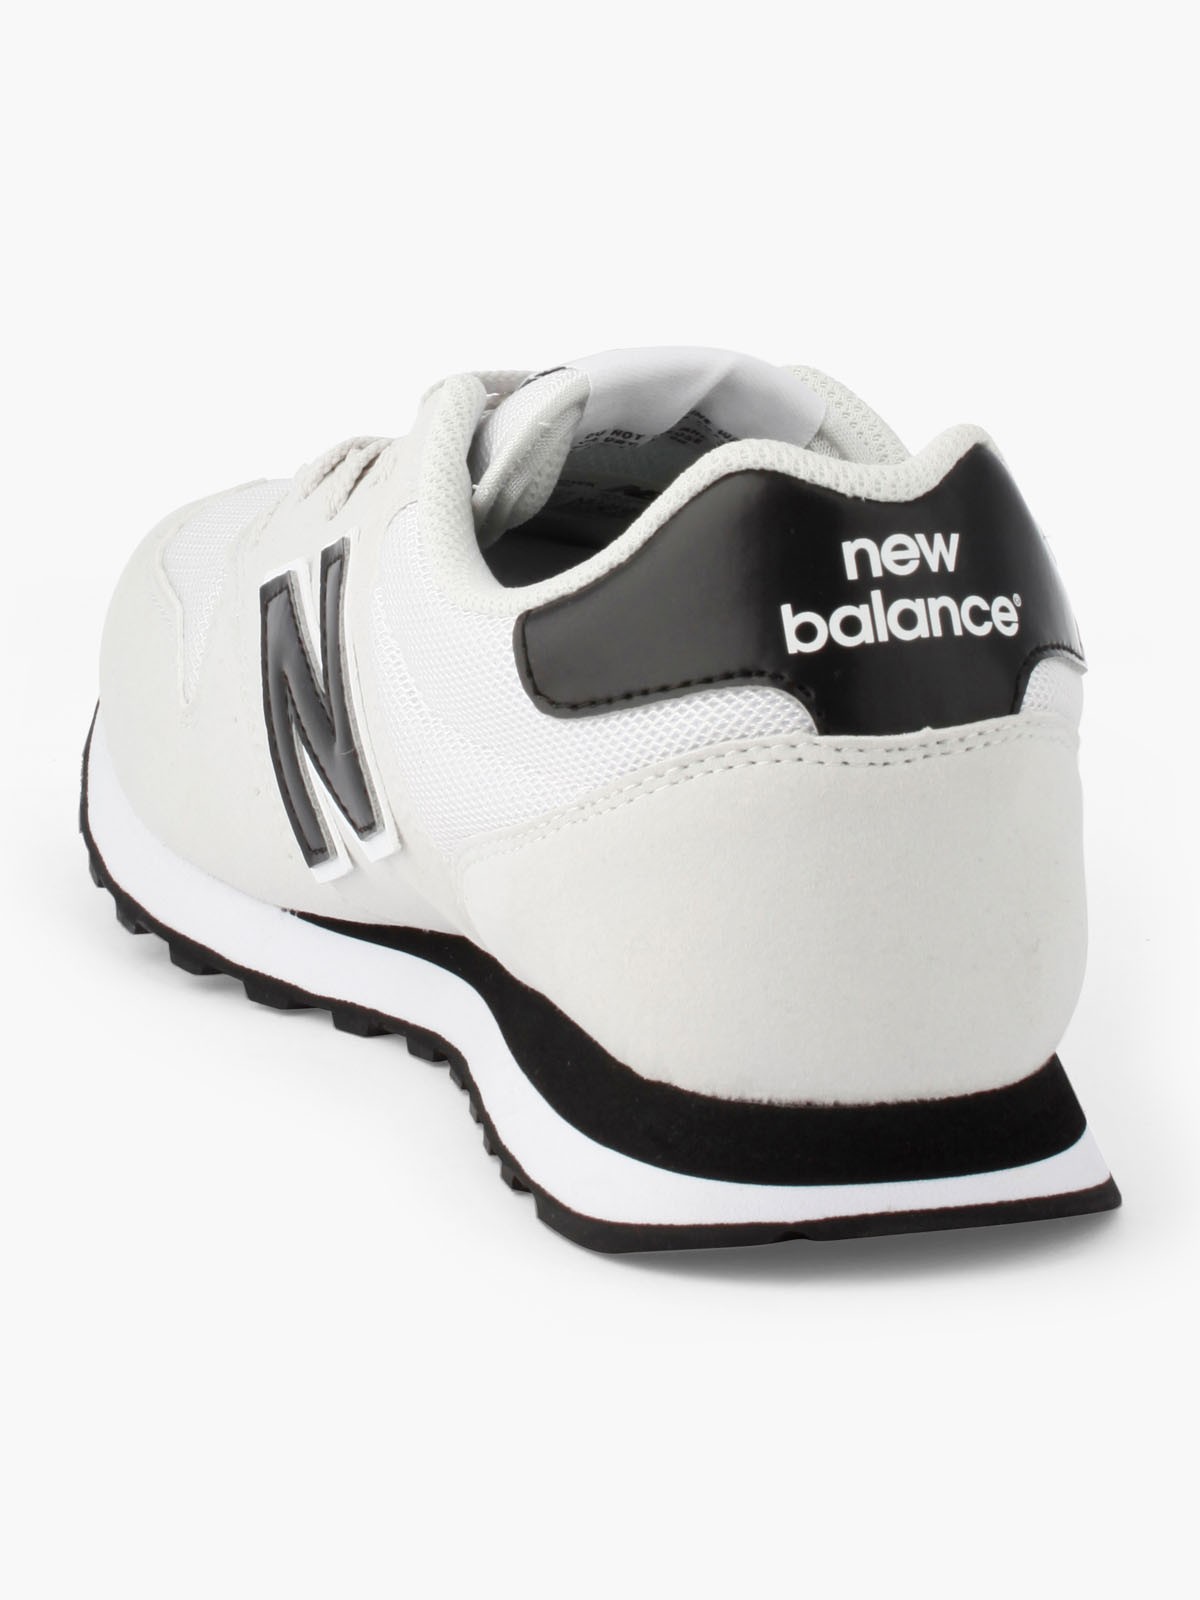 new balance la halle aux chaussures